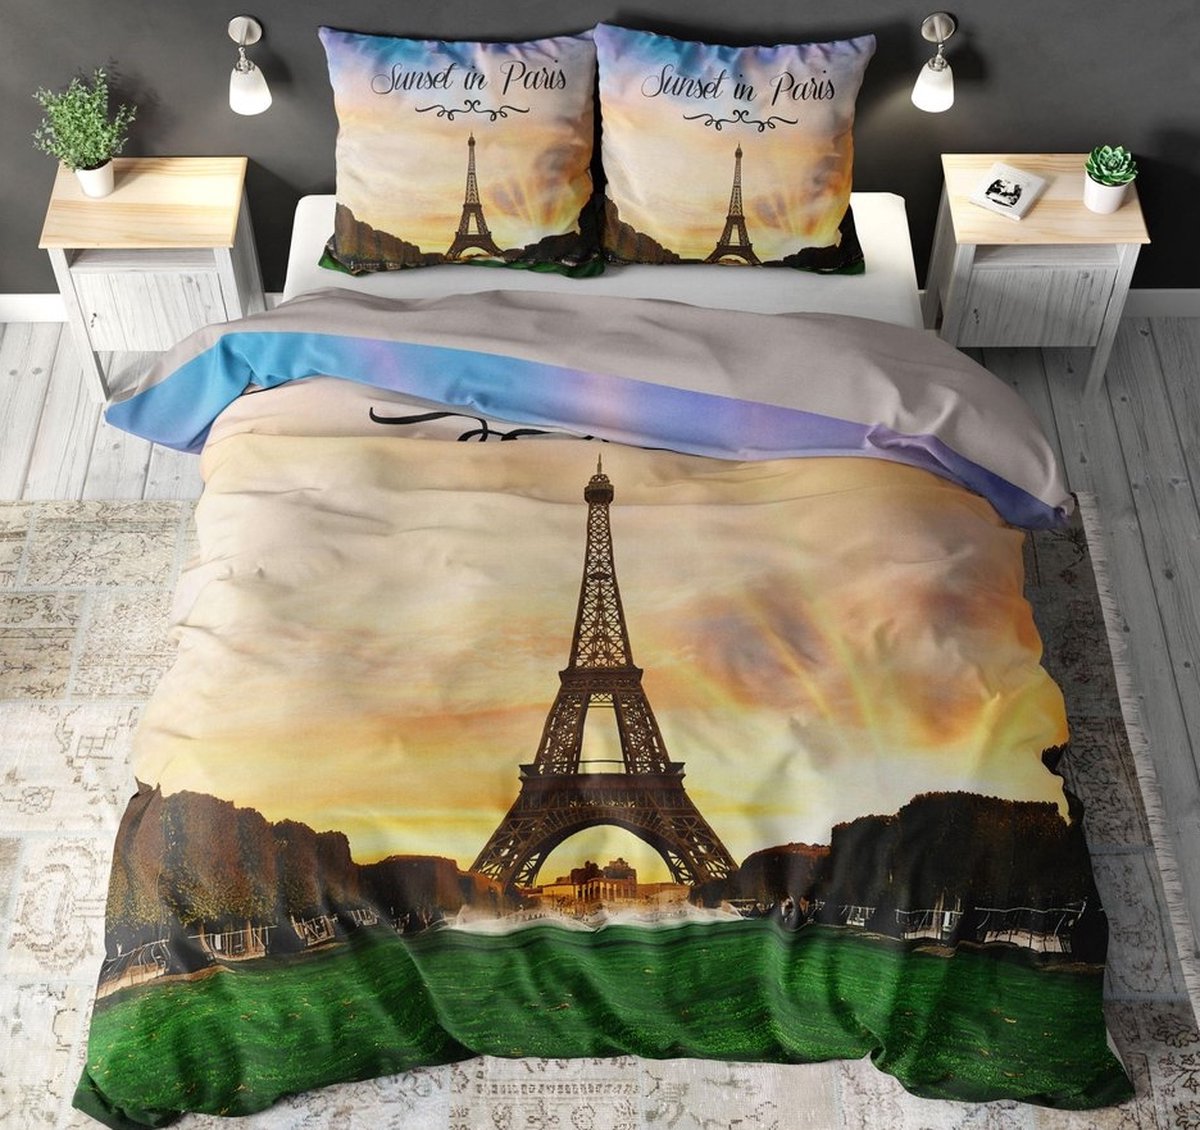 Lits-jumeaux dekbedovertrek (dekbed hoes) “sunset in Paris” met zonsondergang bij de Eiffeltoren in de Franse stad Parijs (Frankrijk) GEMENGD KATOEN 240 x 220 cm (cadeau idee slaapkamer!)